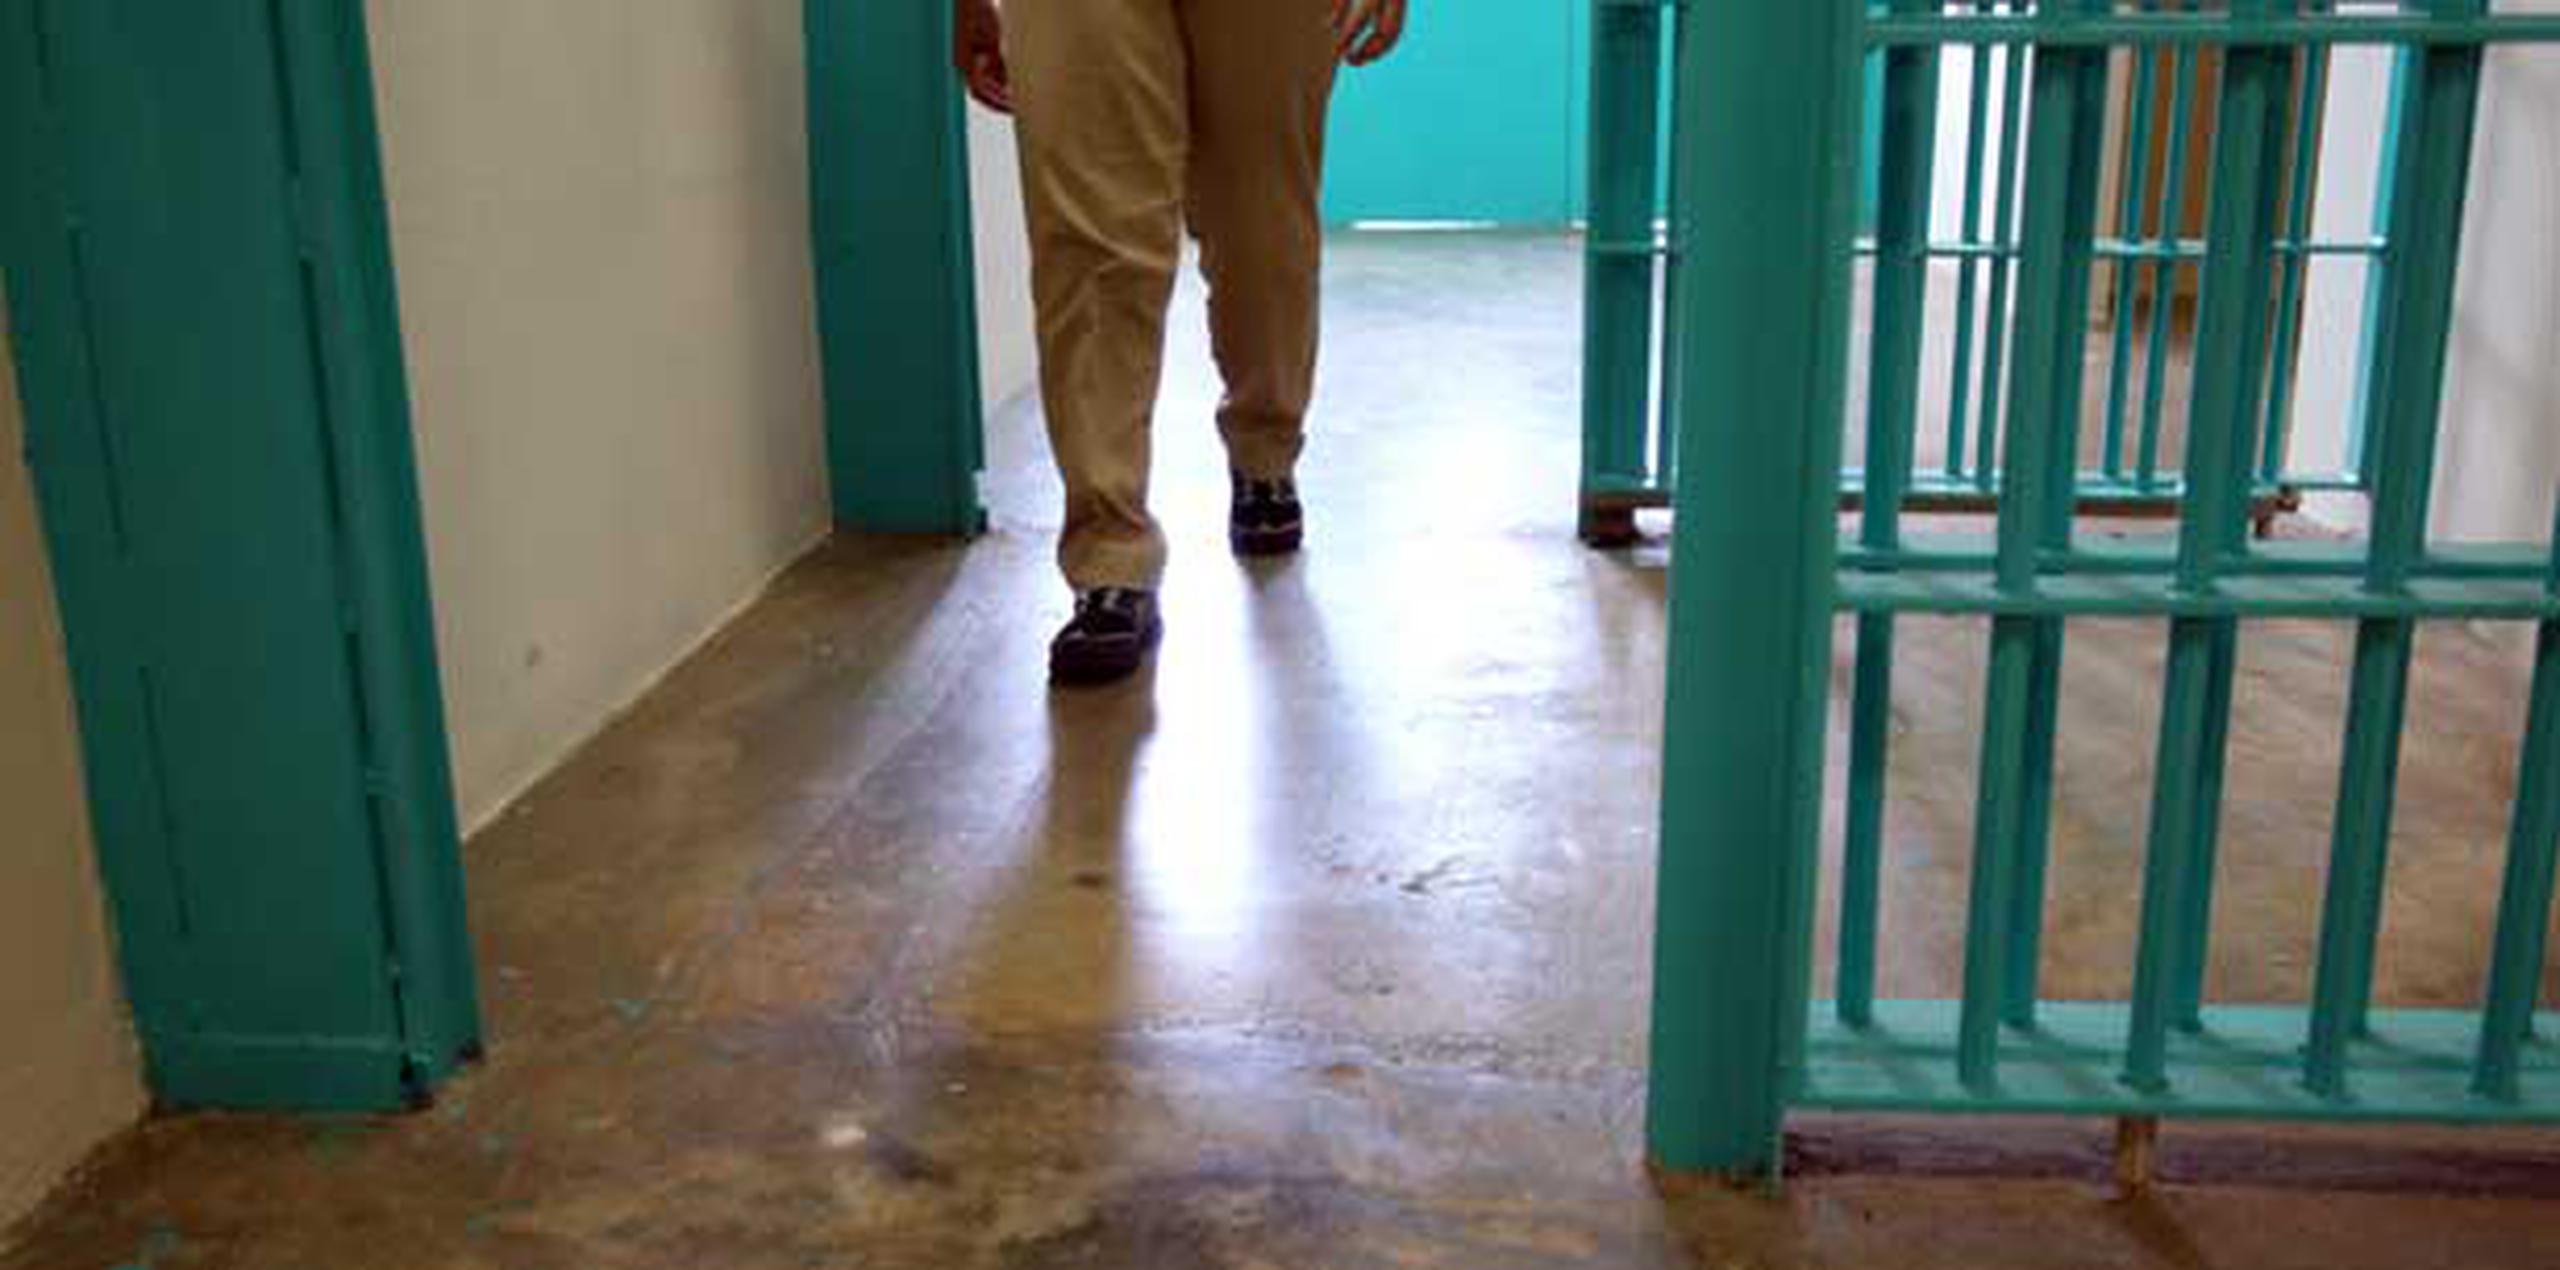 El Departamento de Corrección y Rehabilitación estuvo llamado a no ubicar a dos confinados o confinadas de custodia máxima en la misma celda con el objetivo de evitar el hacinamiento y adelantar su proceso de rehabilitación. (Archivo)